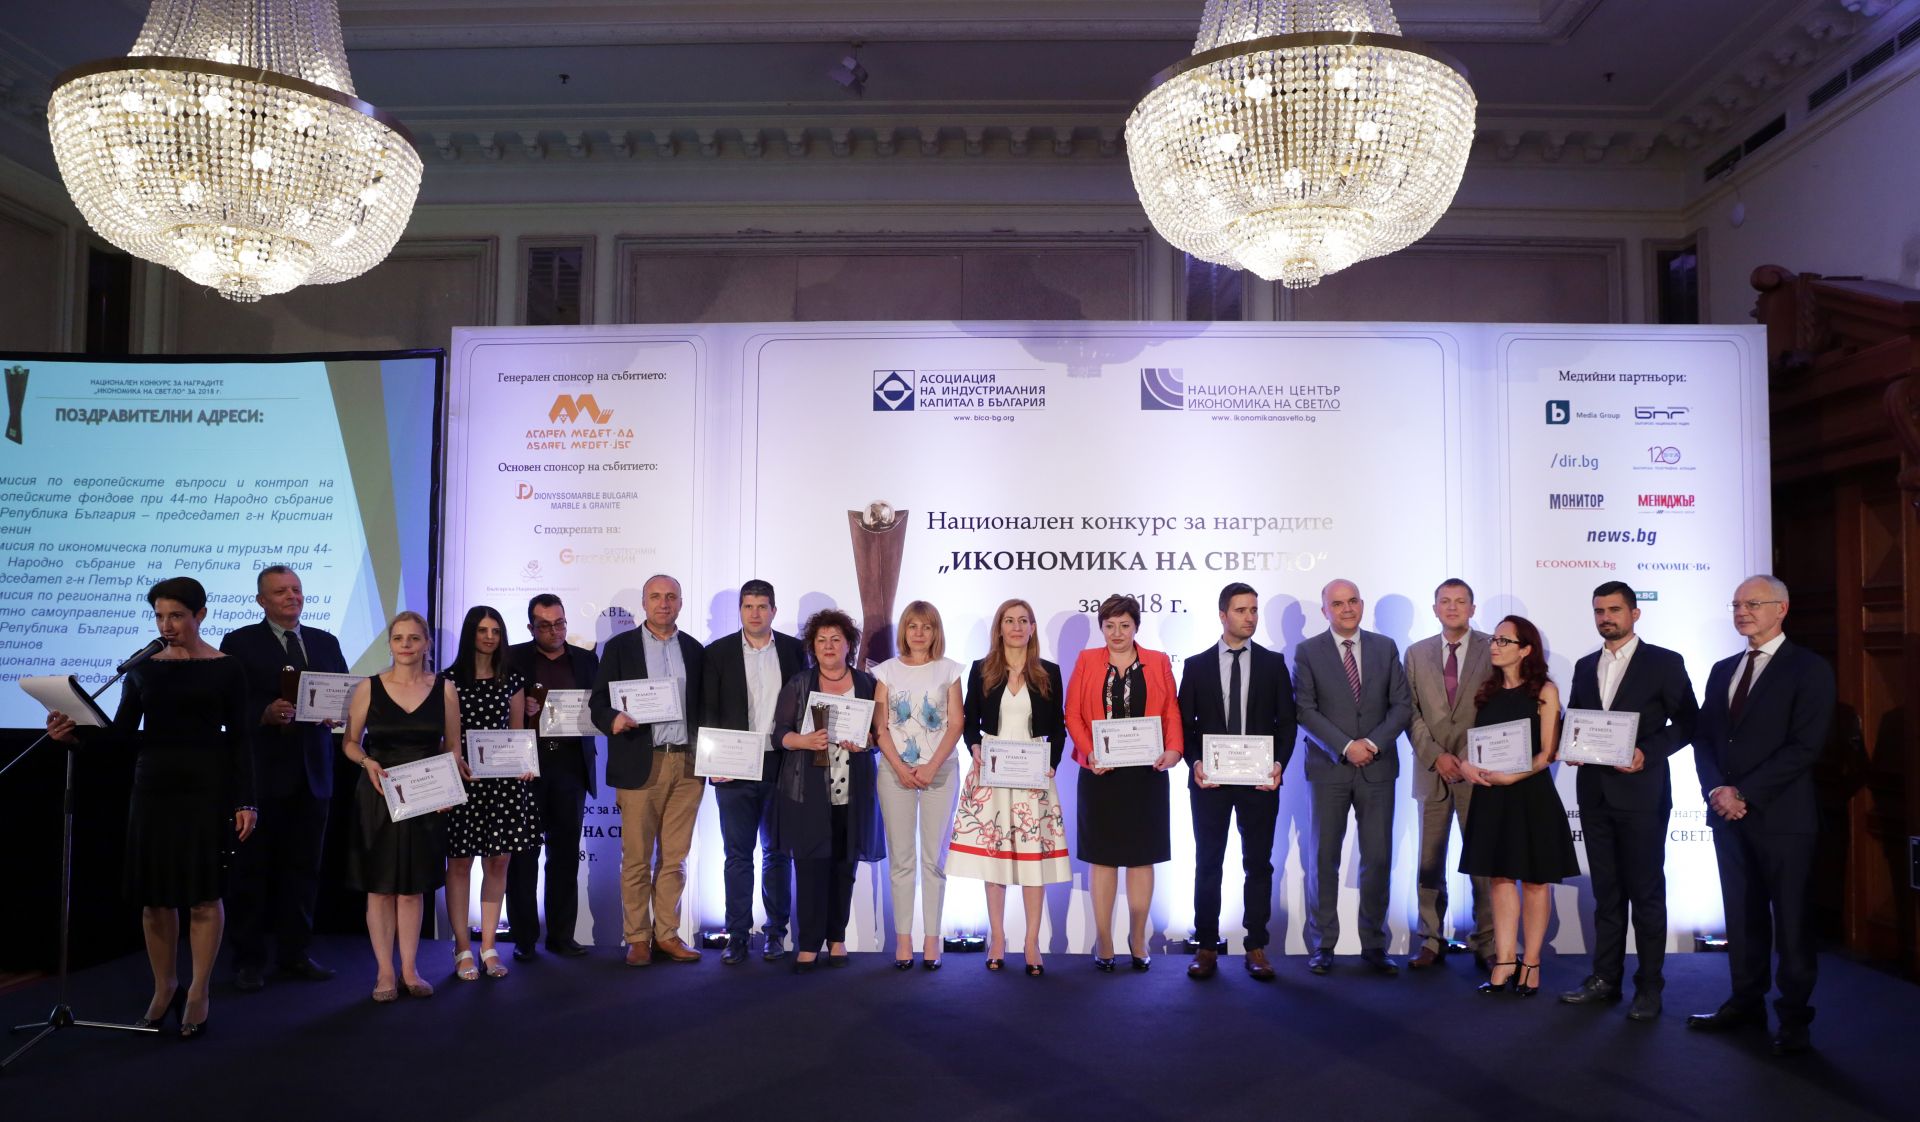 Асоциацията на индустриалния капитал връчи наградите за "Икономика на светло" на официална церемония в София